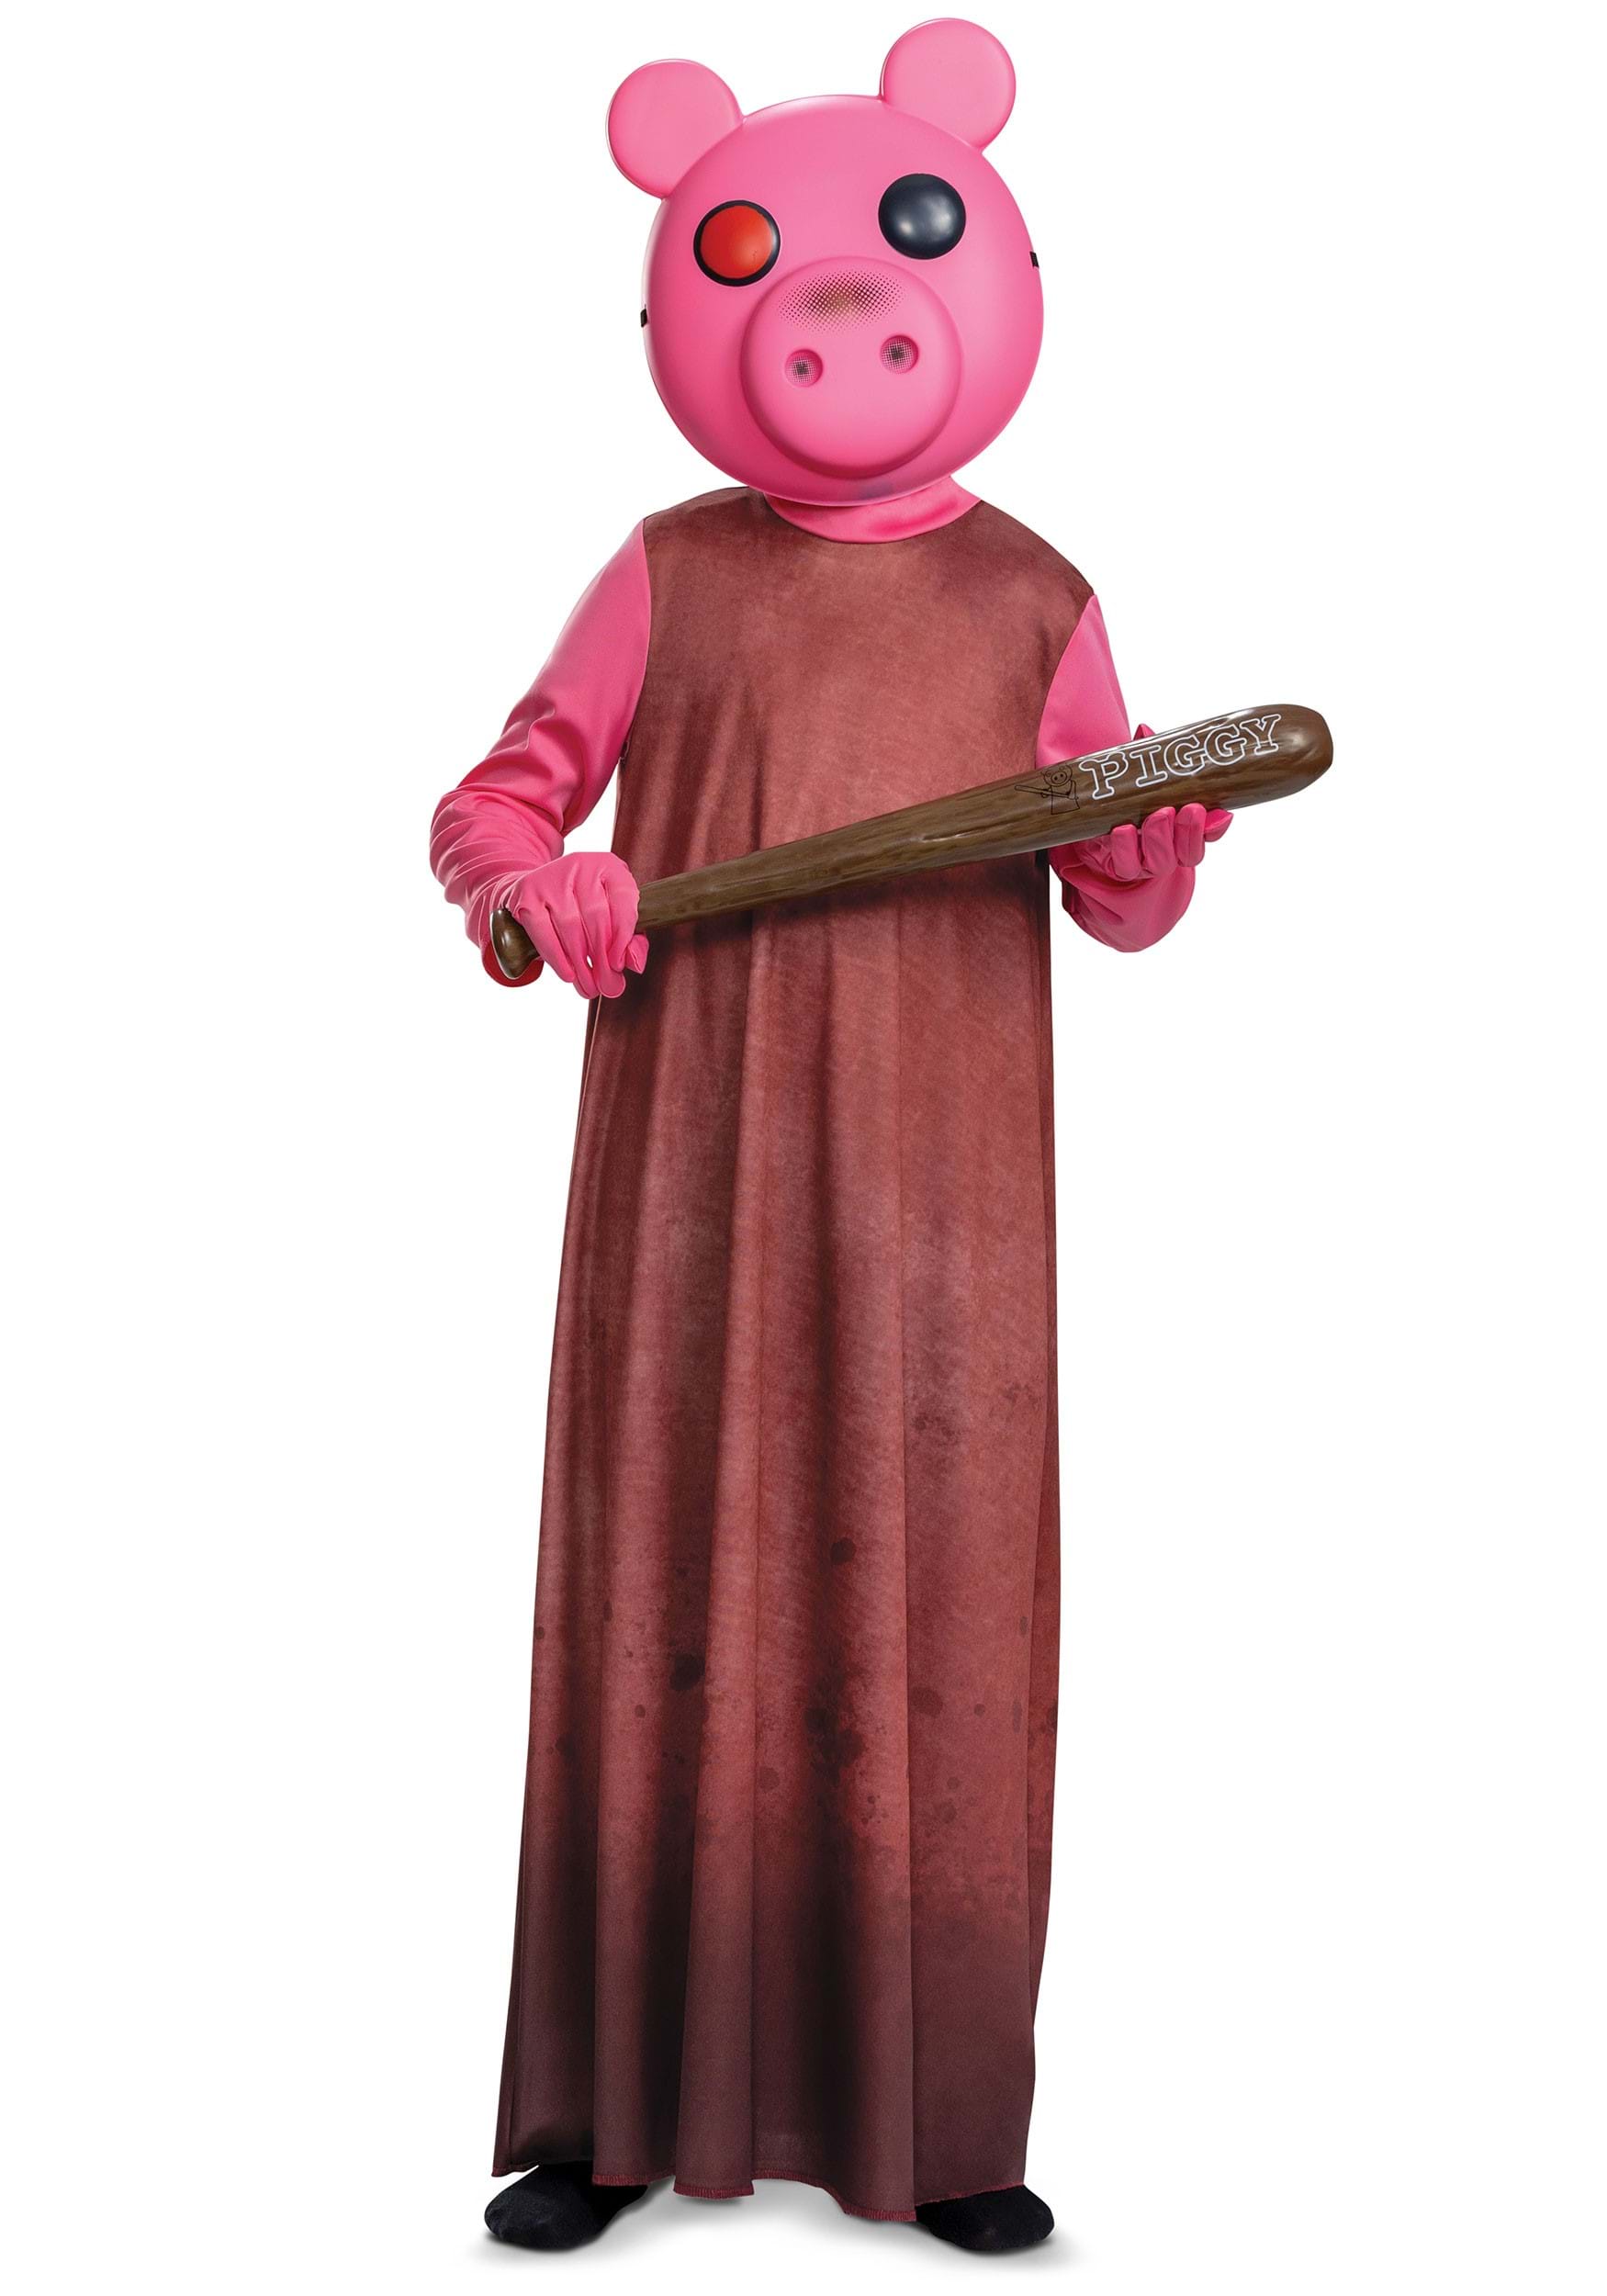 Piggy costume